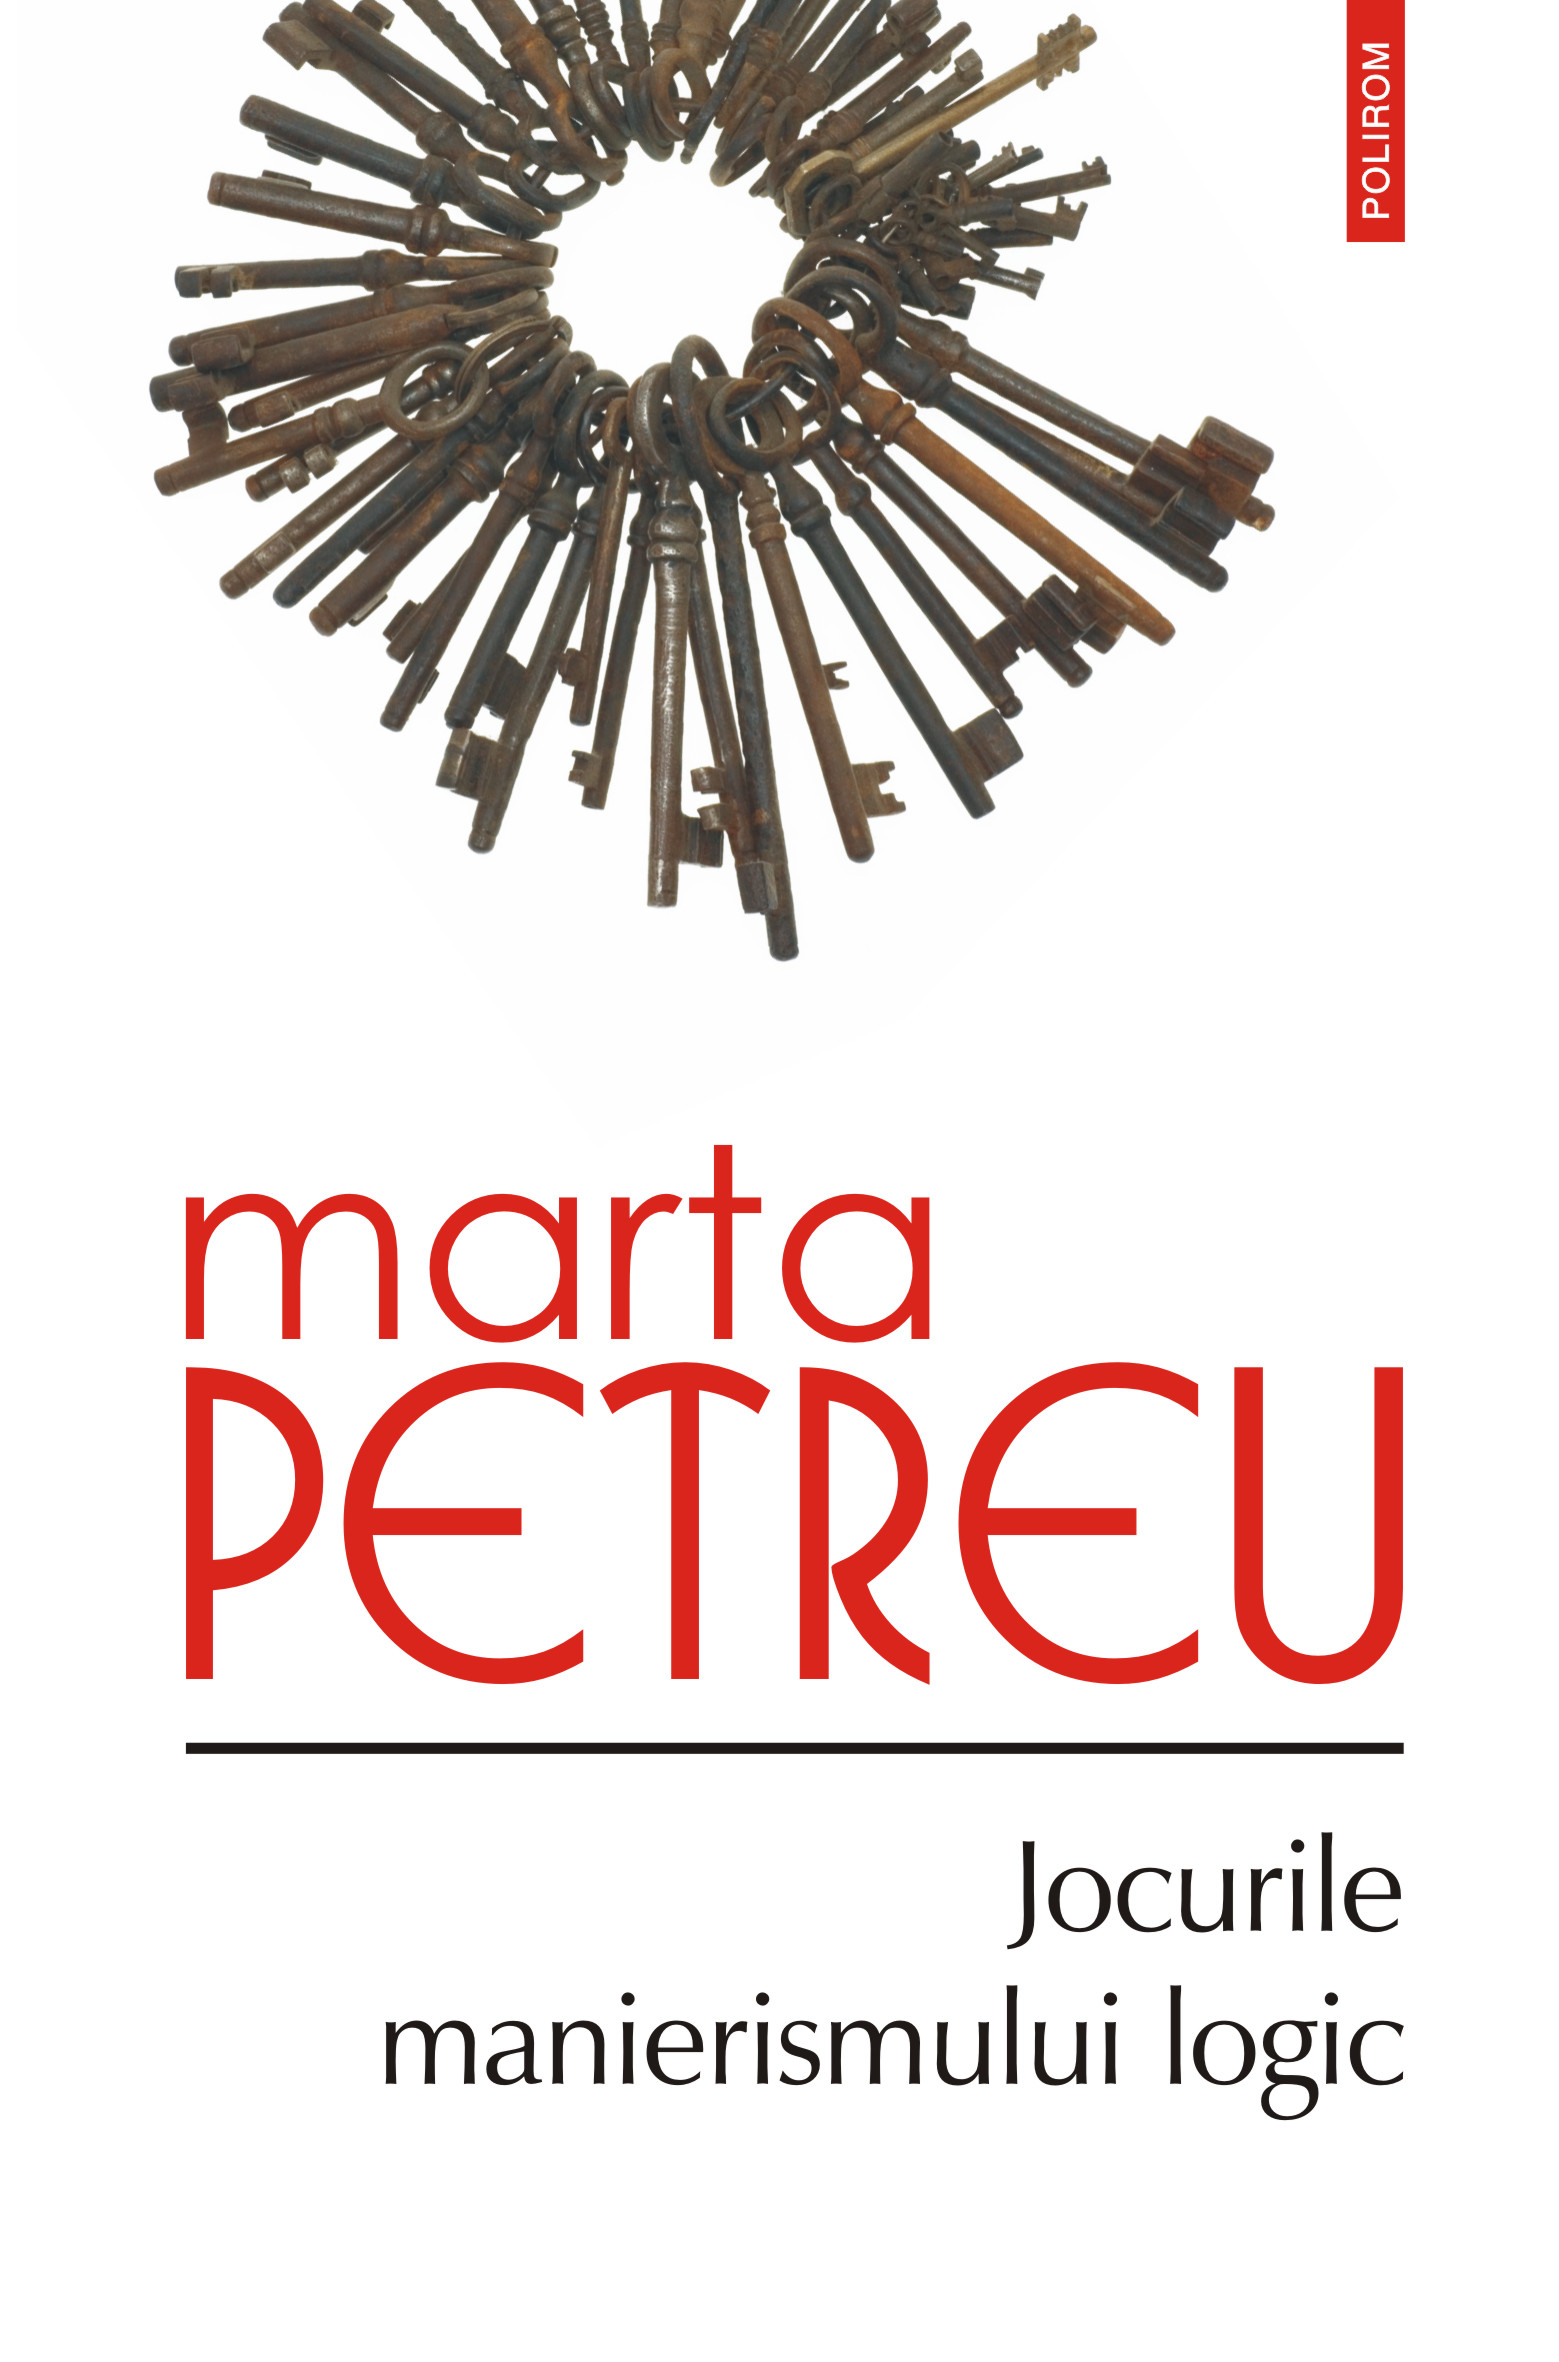 eBook Jocurile manierismului logic - Marta Petreu